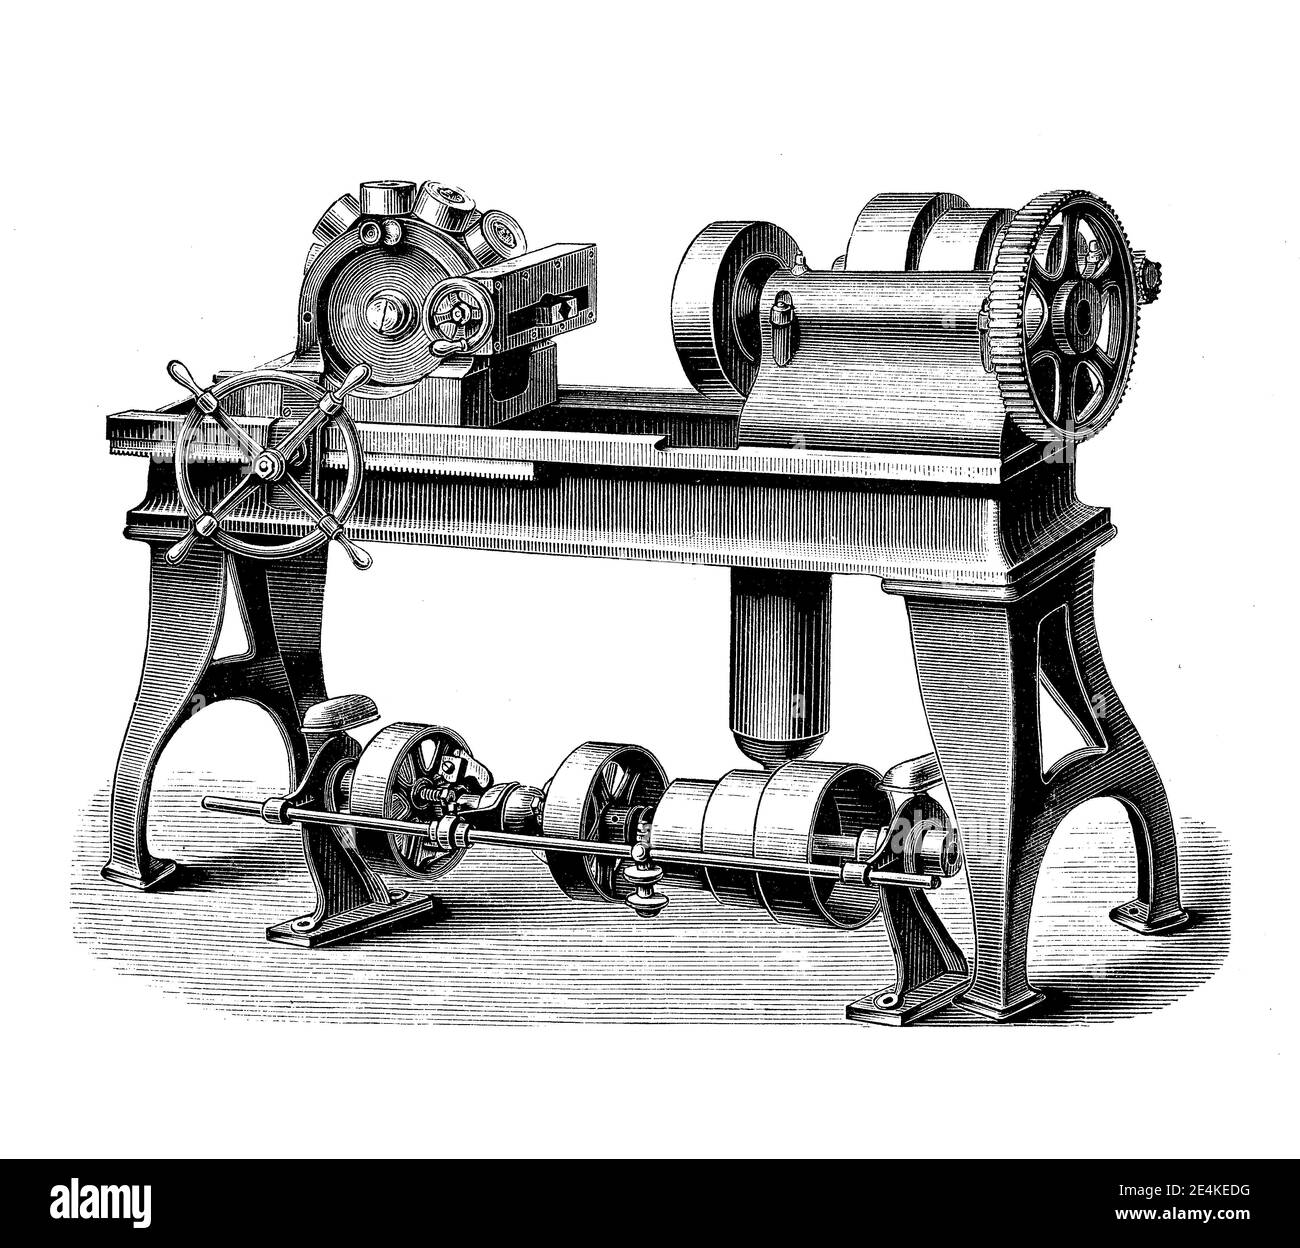 La tagliabulloni con testa a torretta consente di eseguire operazioni di taglio, in sequenza, ciascuna con un diverso utensile di taglio, incisione del XIX secolo Foto Stock